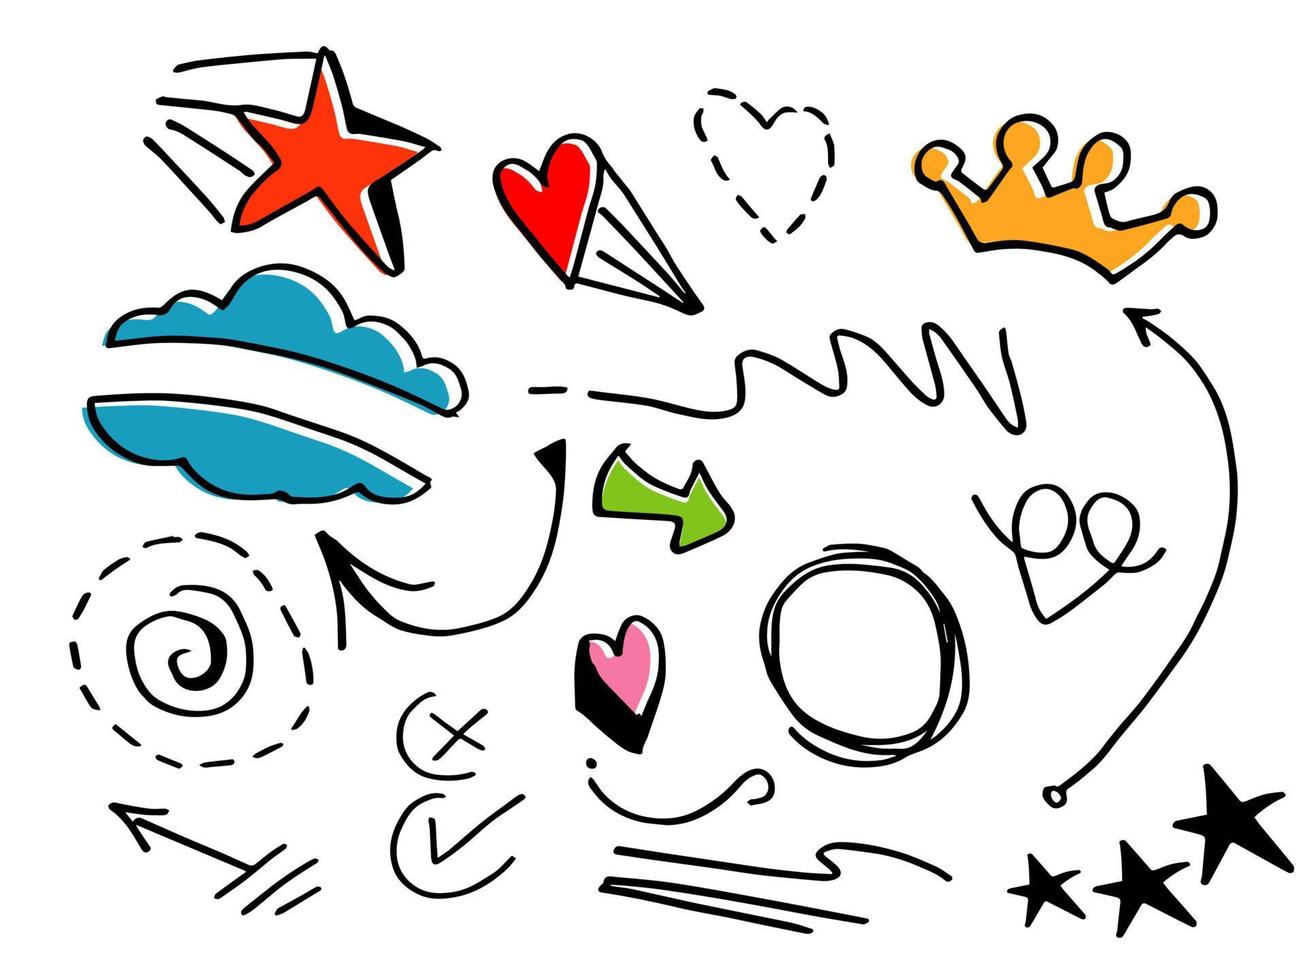 Vektor handgezeichnete Sammlung von Doodle-Design-Elementen. Curly Swishes, Swoops, Wirbel, Pfeil, Herz, Liebe, Krone, Stern und Betonungselement mit der Farbe. für Konzeptdesign verwenden